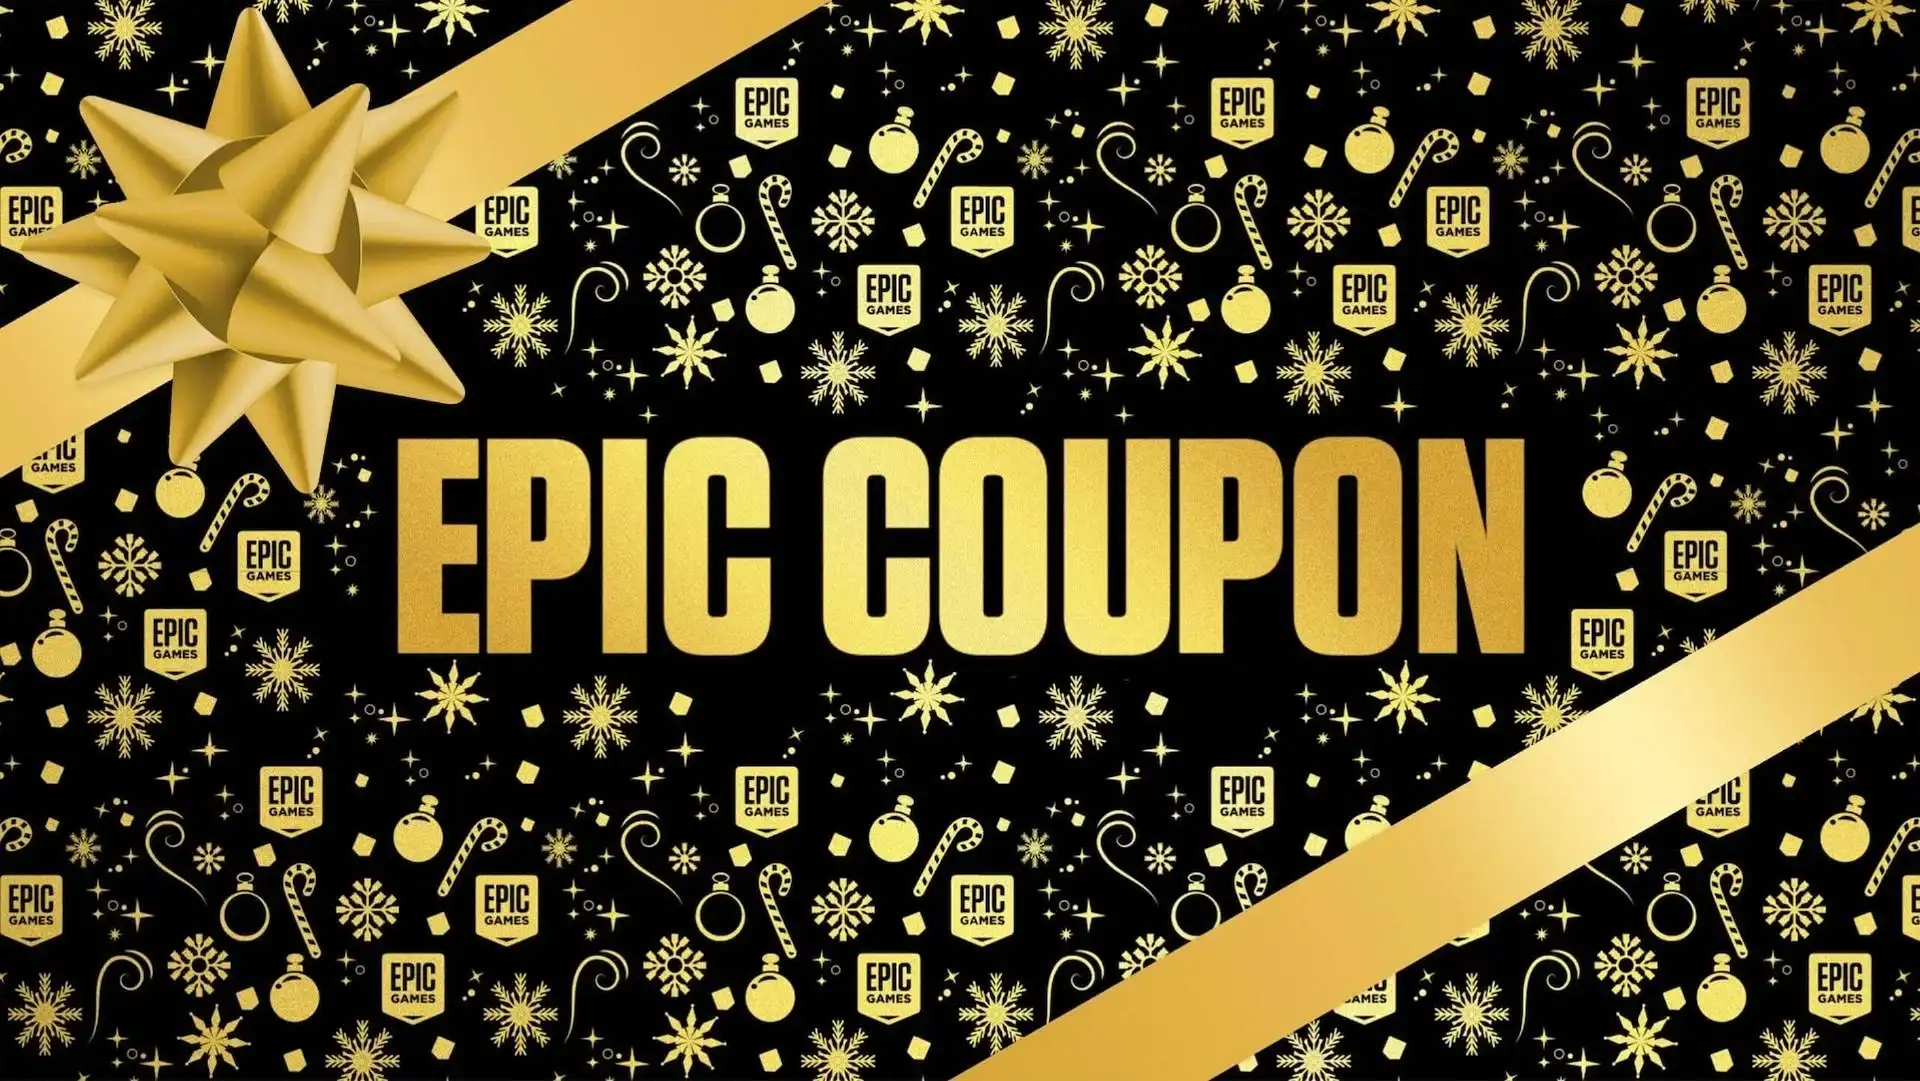 Праздничная распродажа Epic Games Store – даты начала и окончания, лучшие предложения, бесплатные игры и многое другое